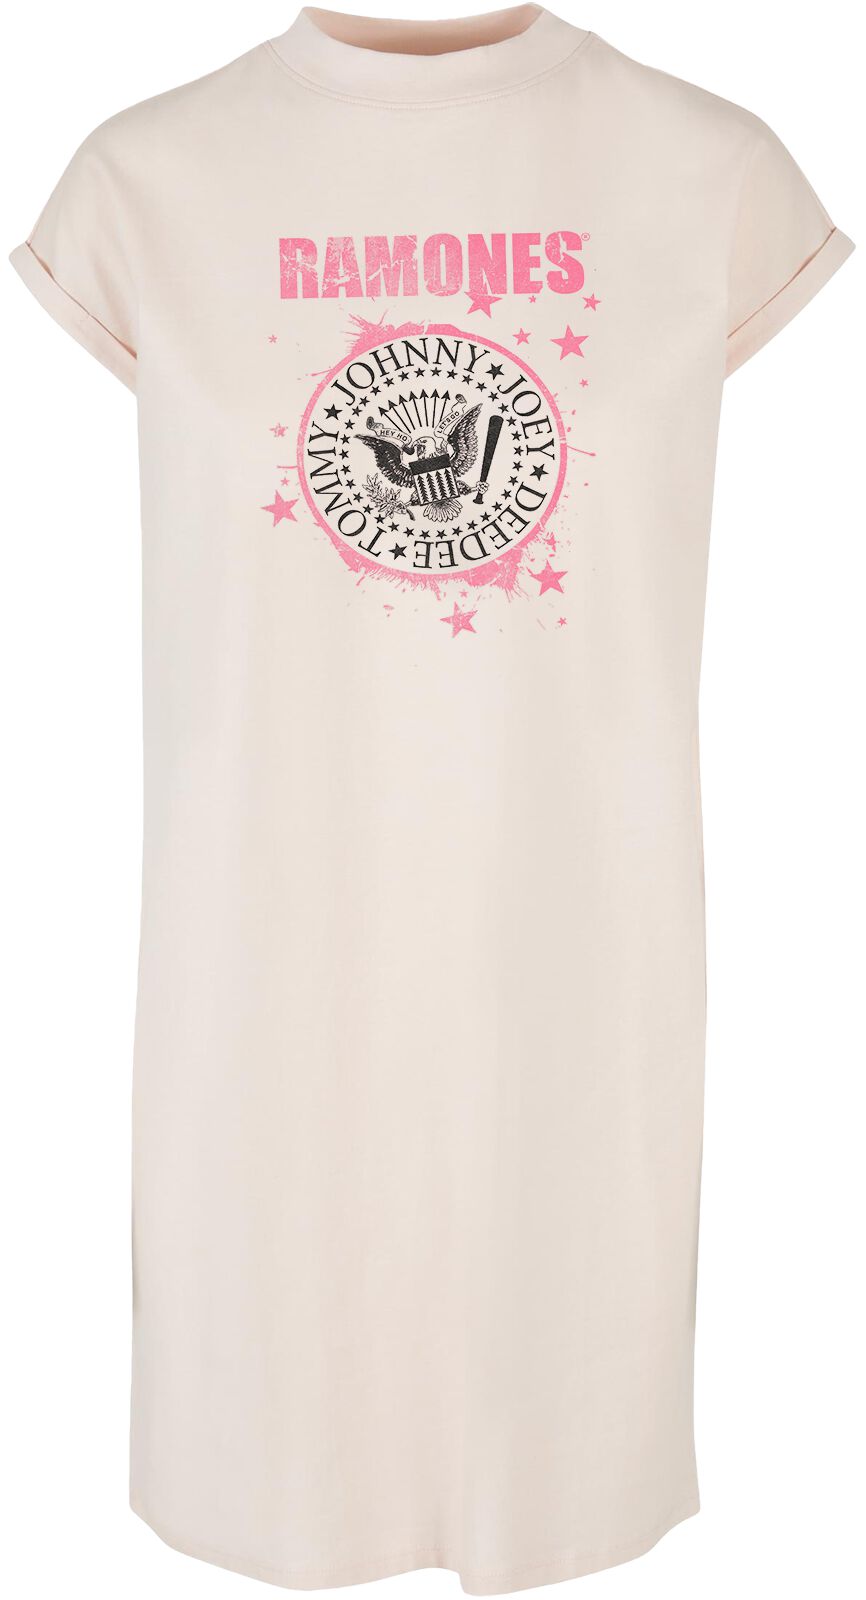 Ramones Kleid knielang - Splash Crest - S bis XXL - für Damen - Größe L - pink  - Lizenziertes Merchandise!